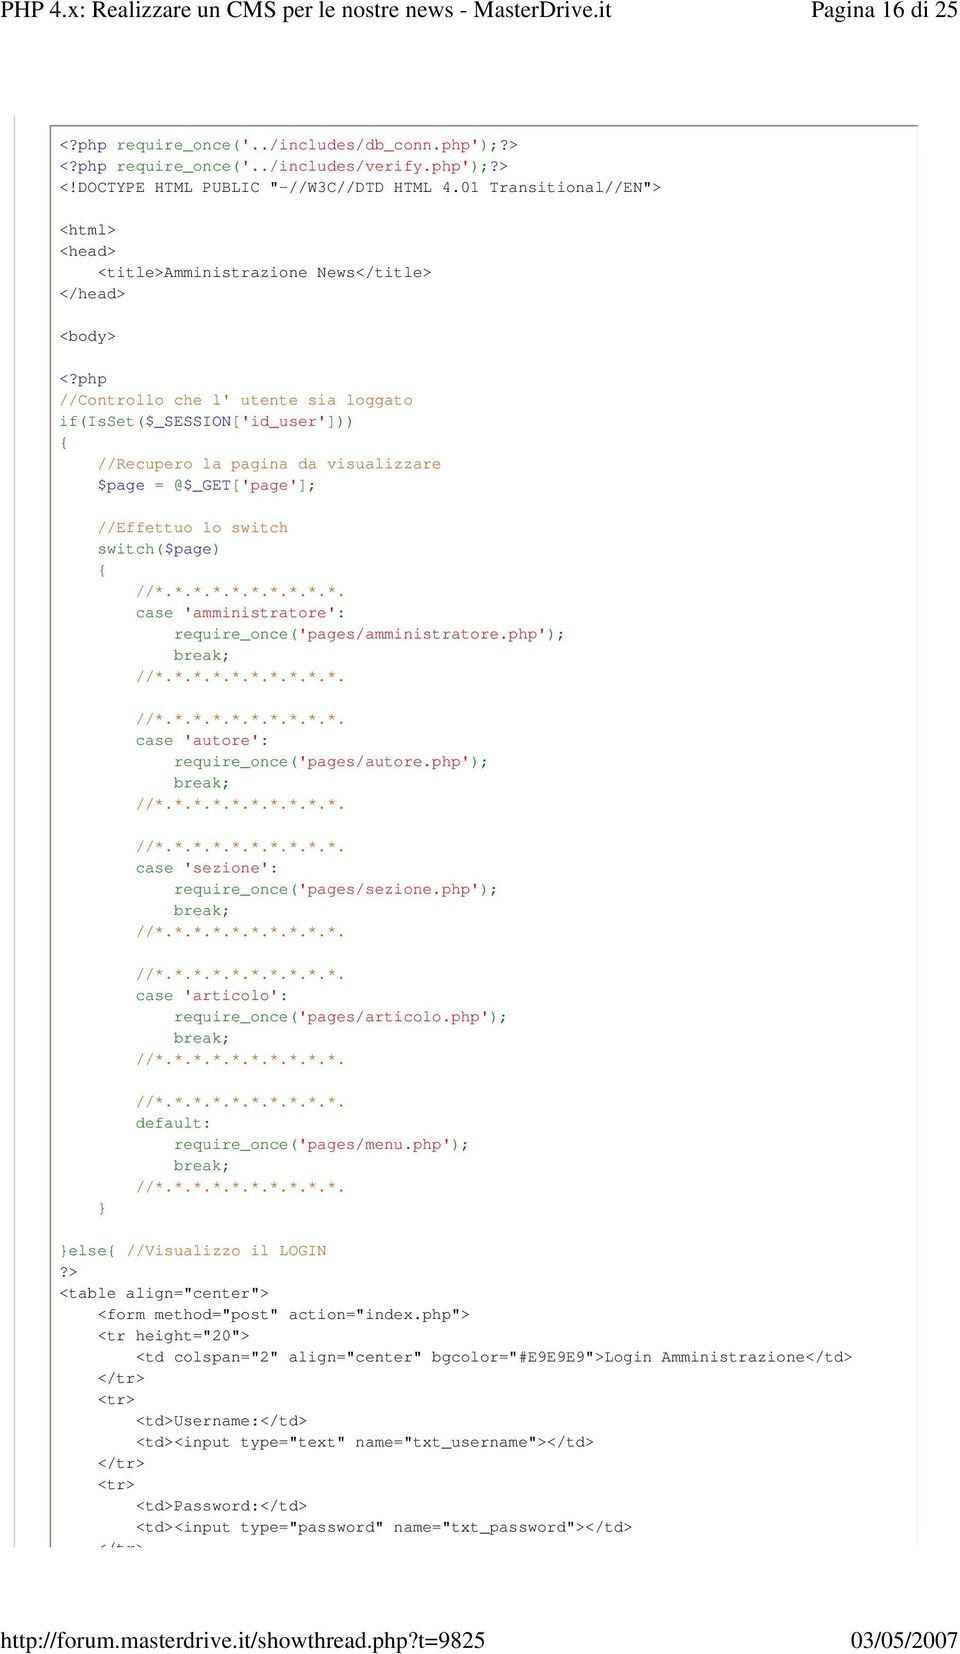 php //Controllo che l' utente sia loggato if(isset($_session['id_user'])) { //Recupero la pagina da visualizzare $page = @$_GET['page']; //Effettuo lo switch switch($page) { case 'amministratore':